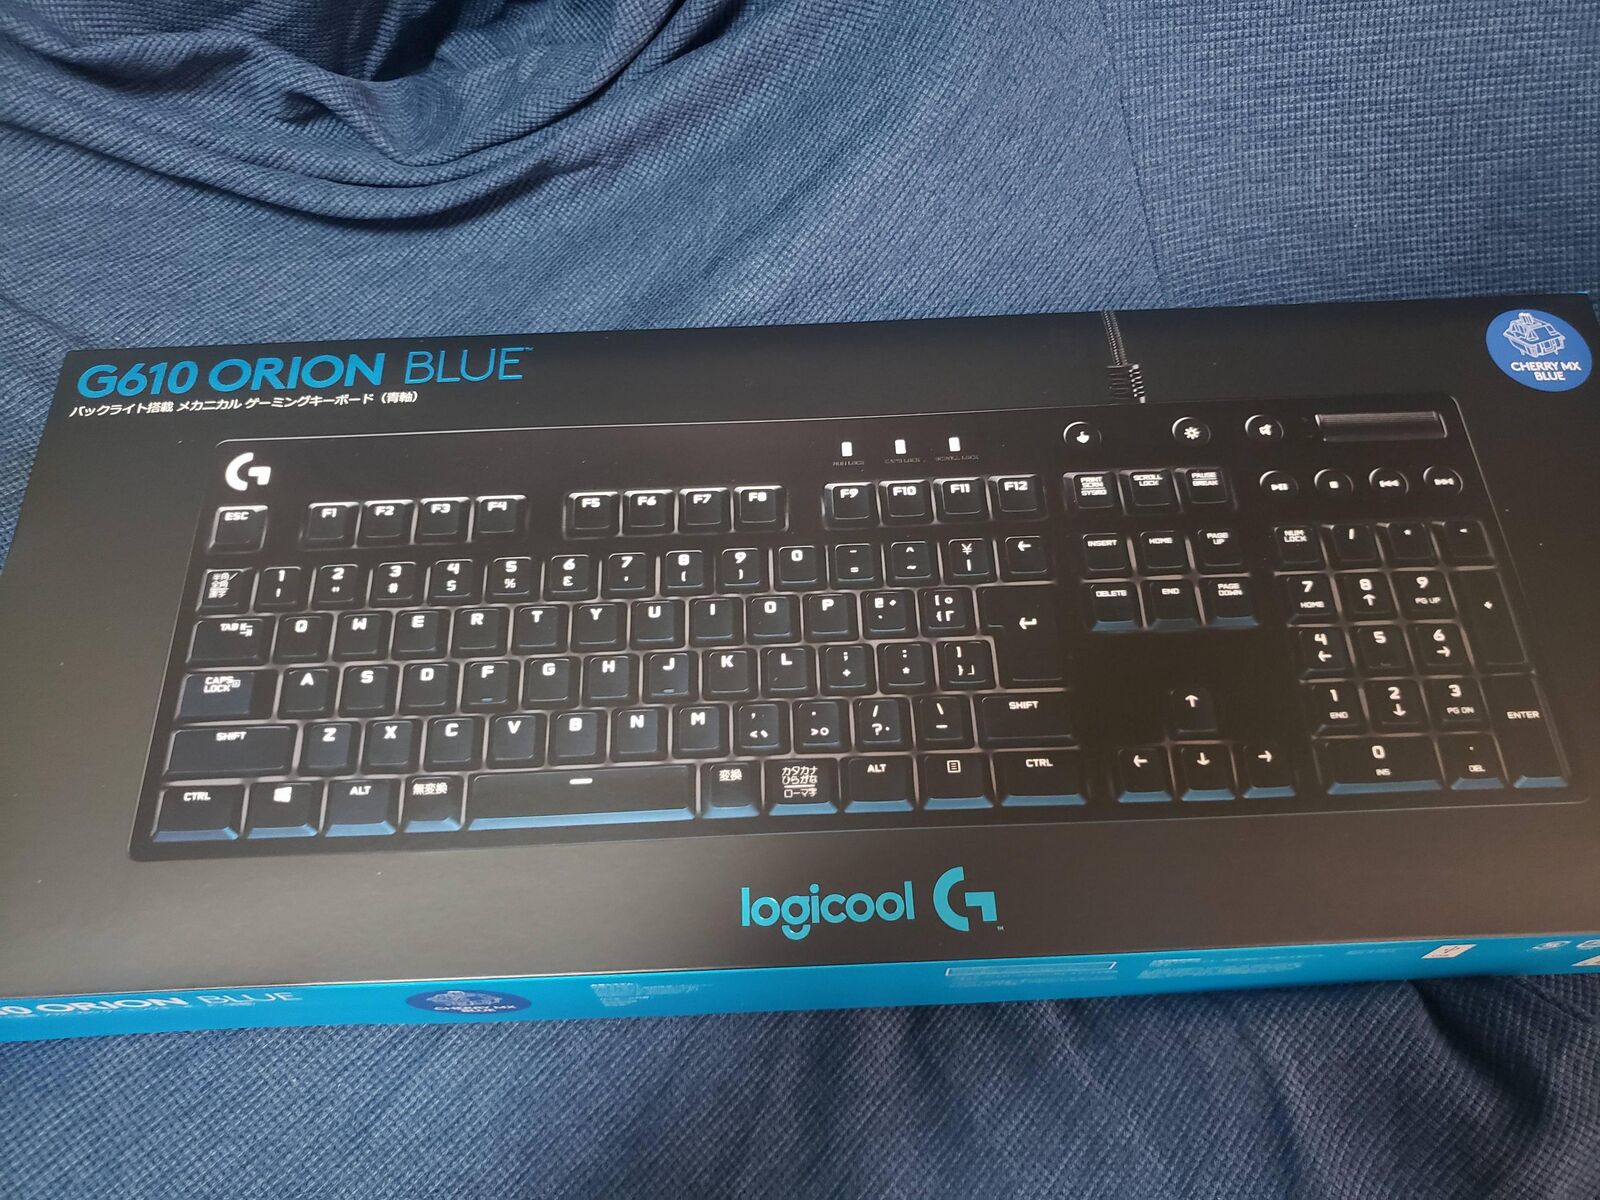 Logicoolのゲーミングキーボード買ったから開封してくwwww : IT速報